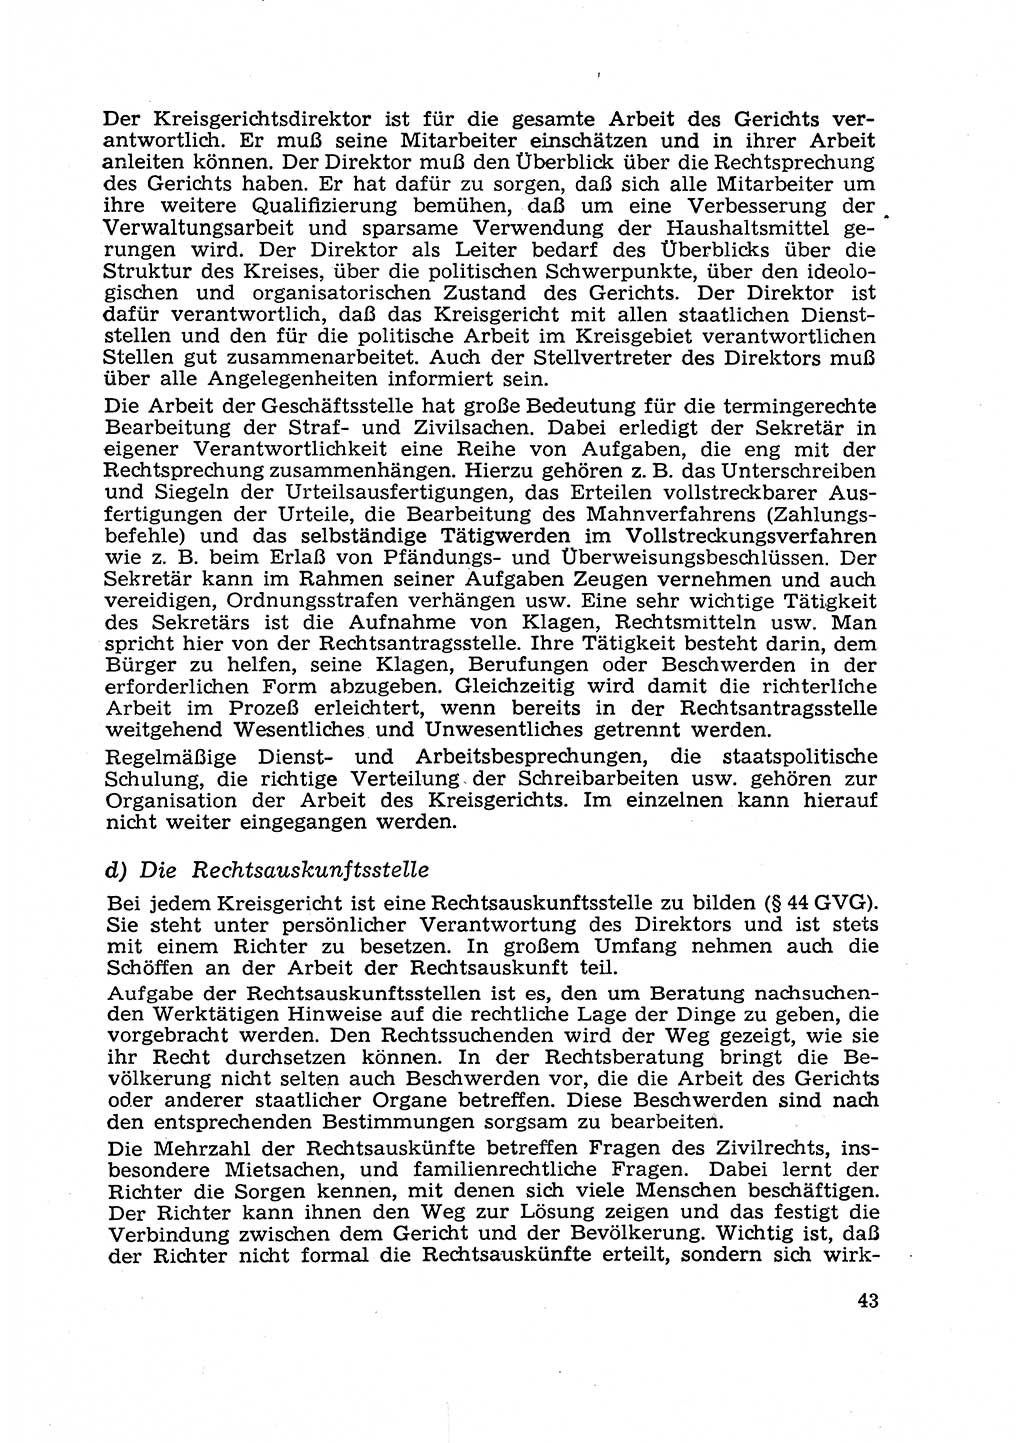 Gericht und Rechtsprechung in der Deutschen Demokratischen Republik (DDR) 1956, Seite 43 (Ger. Rechtspr. DDR 1956, S. 43)